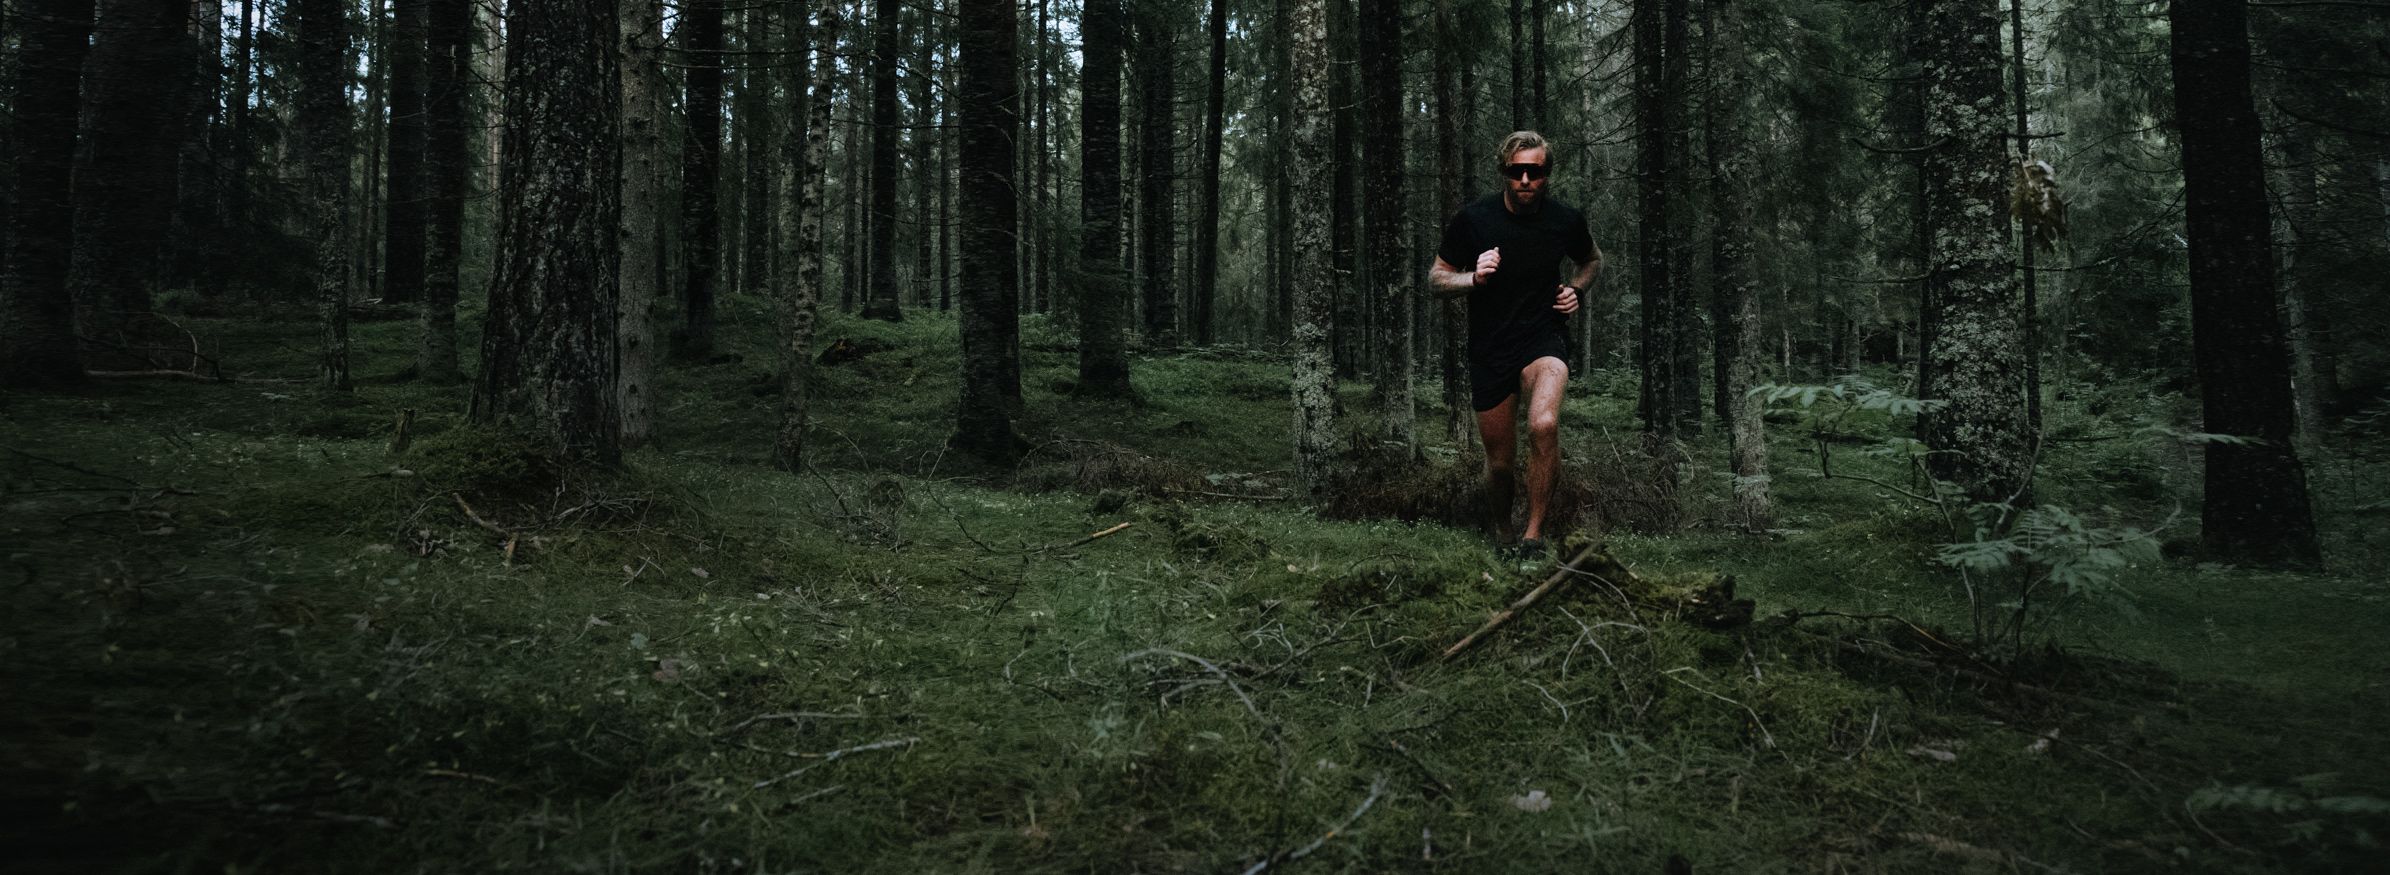 Mann som løper terrengløp i skogen